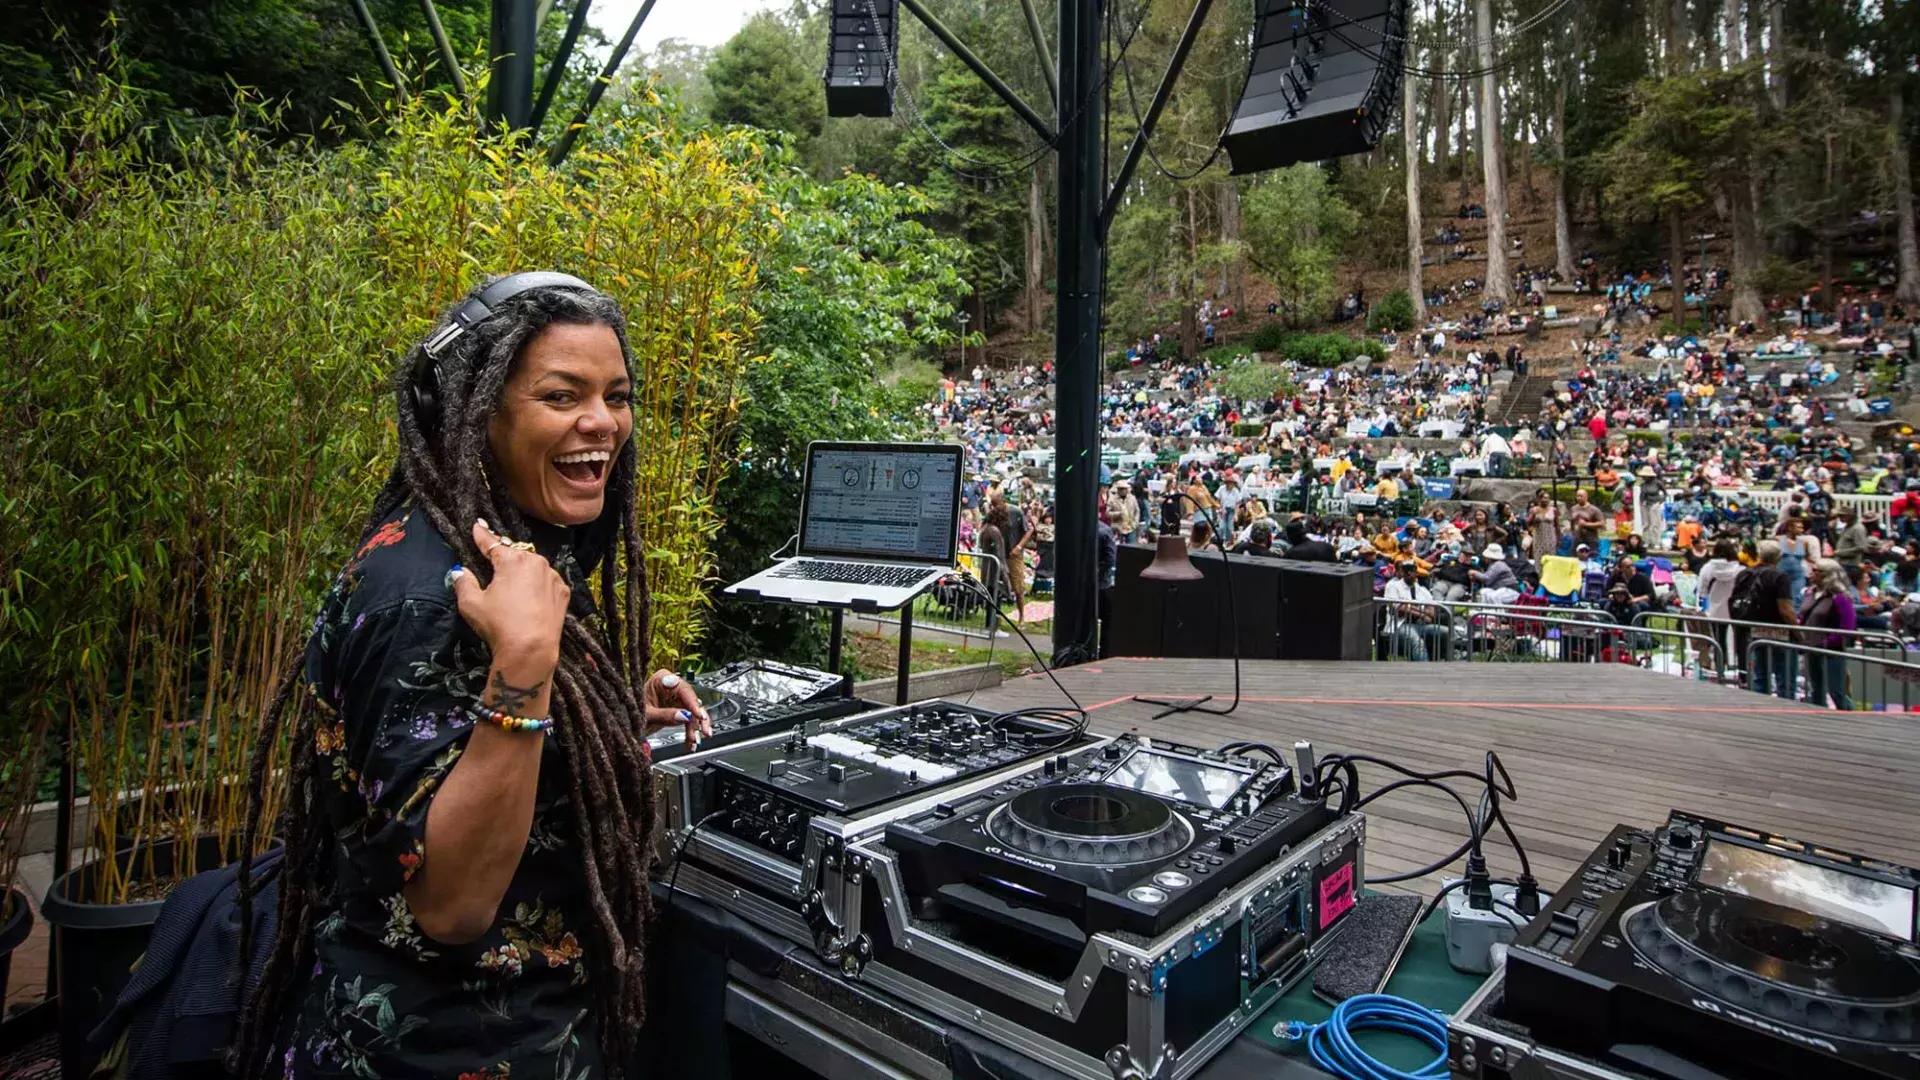 Una donna che fa il DJ allo Stern Grove Festival si guarda alle spalle e sorride alla telecamera.